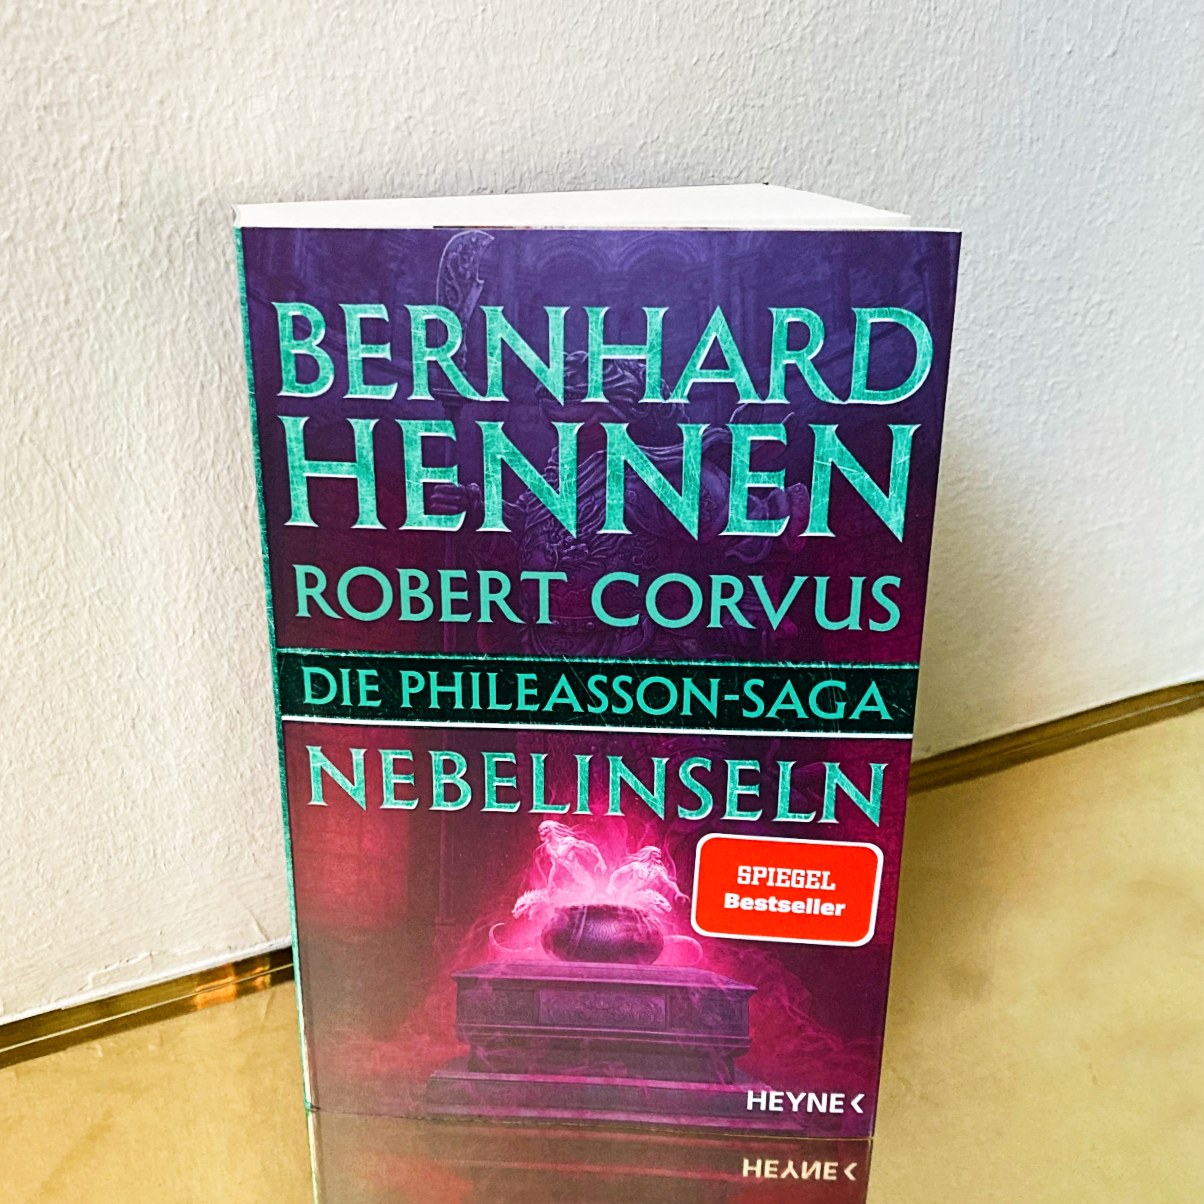 Cover von Bernhard Hennens "Die Nebelinseln"